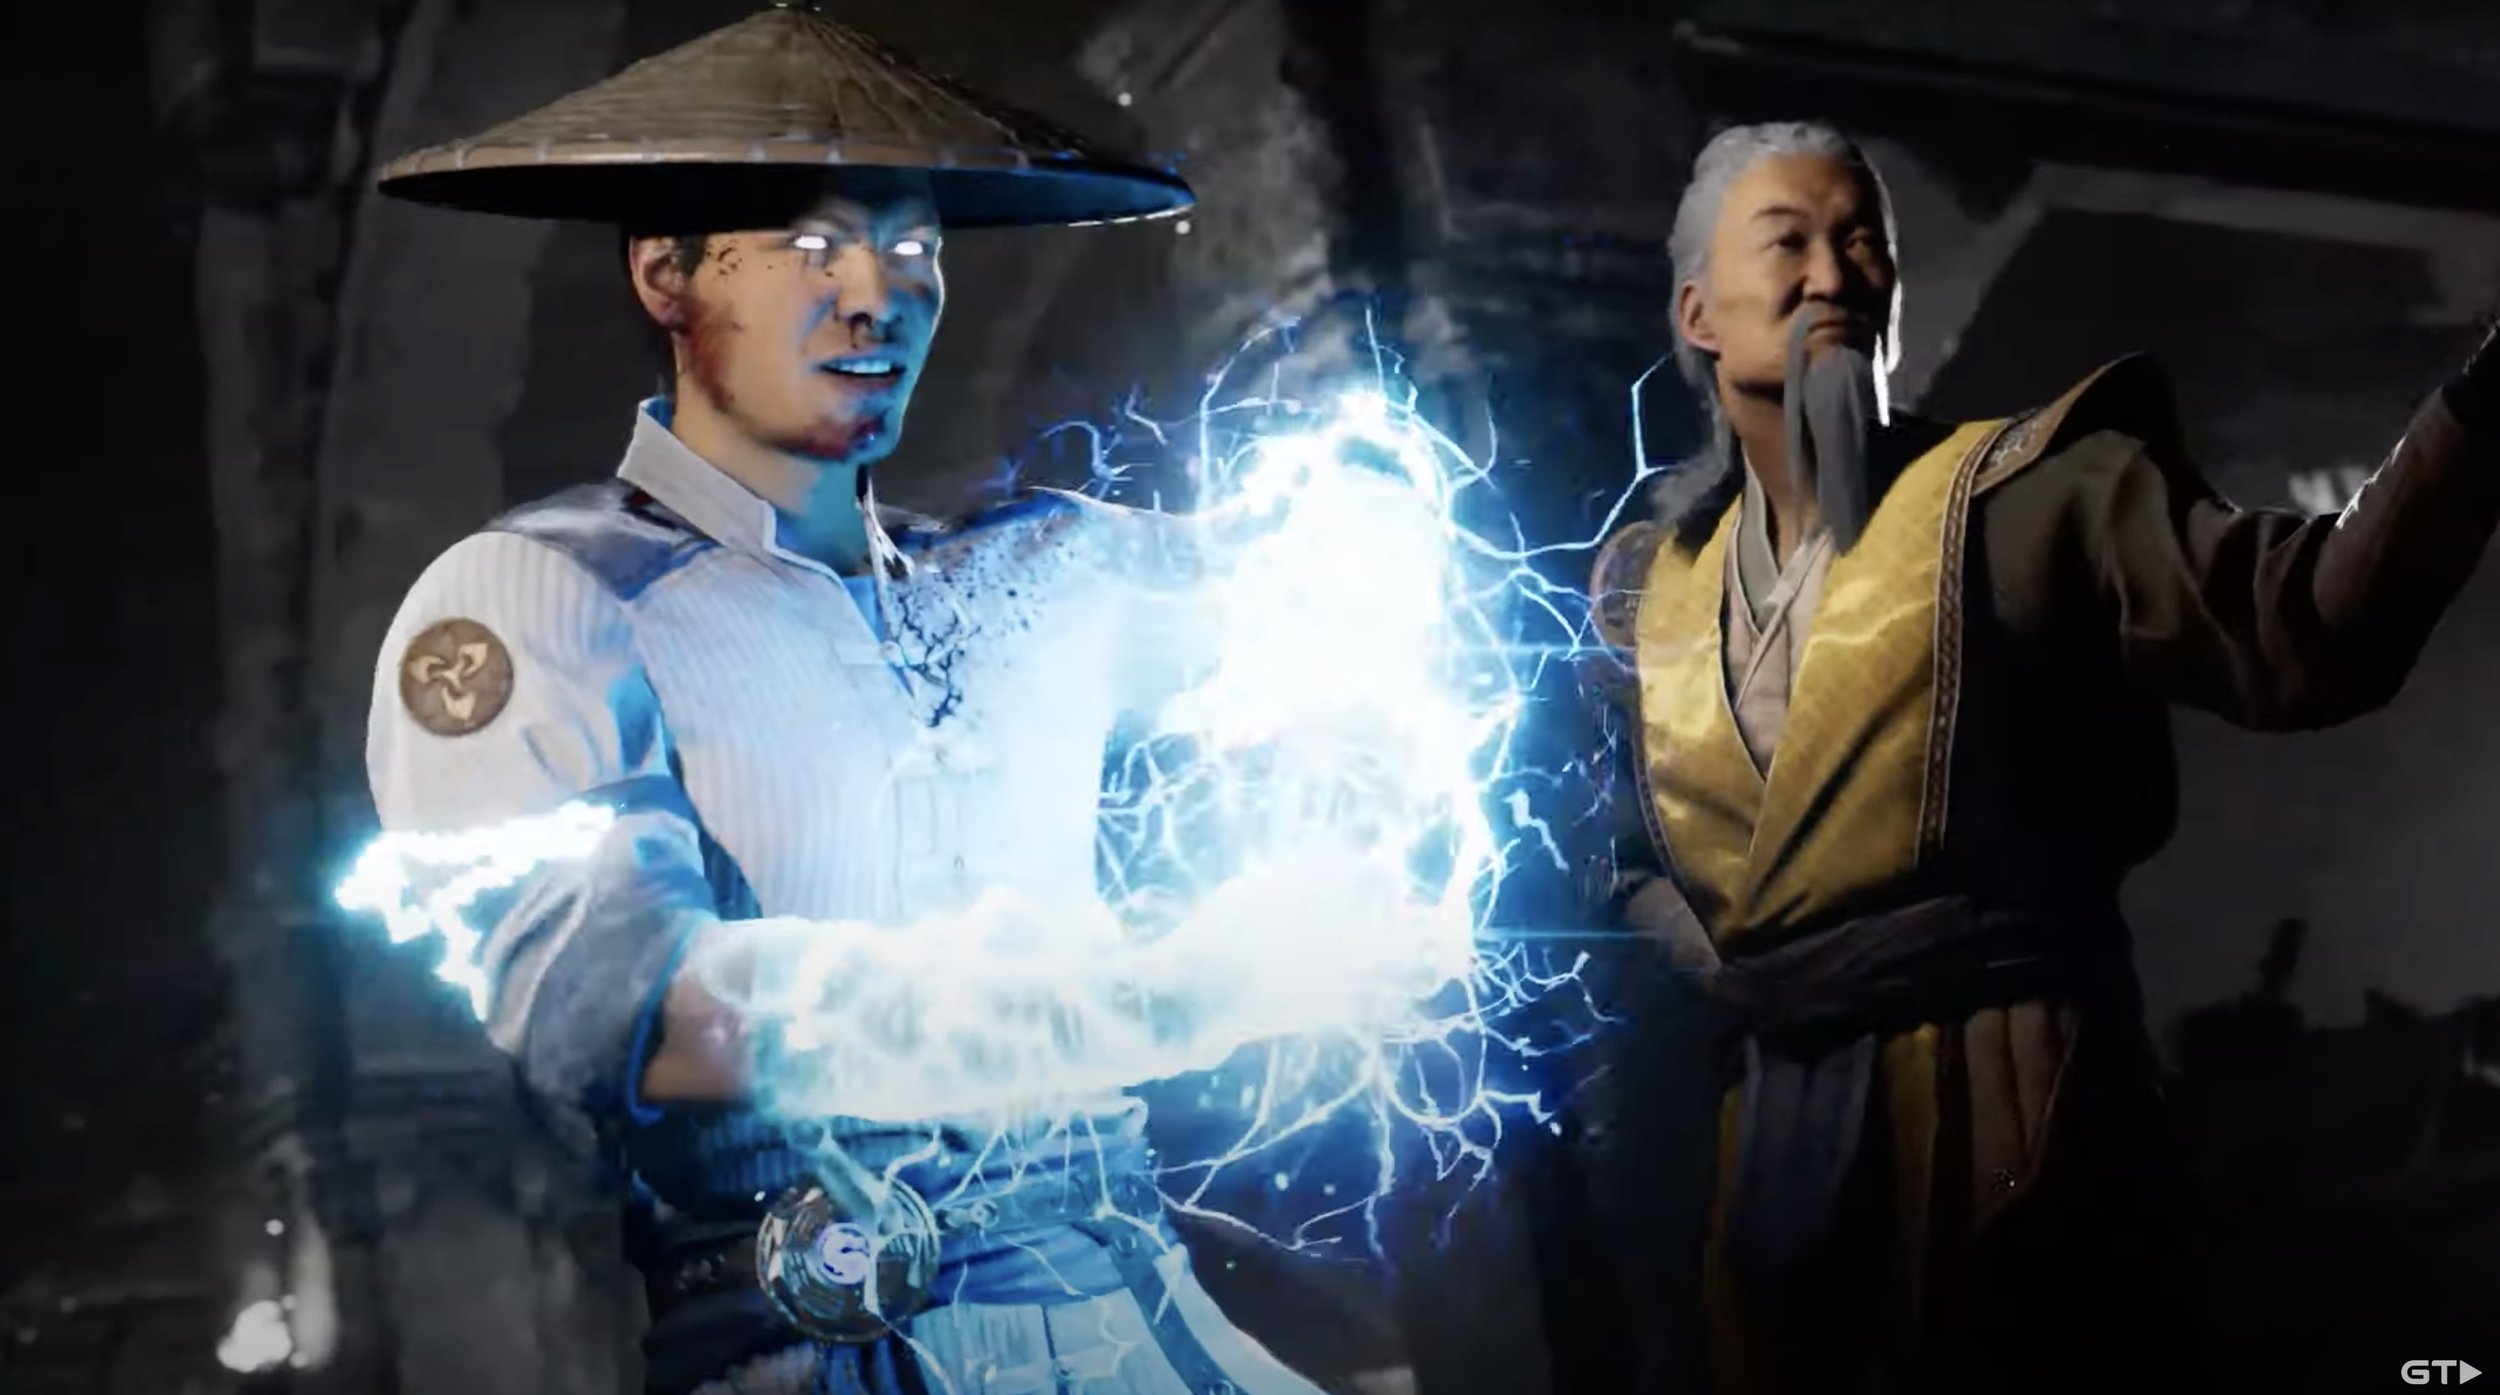 Mortal Kombat Movie: Get a Closer Look at Mileena, Kung Lao, and